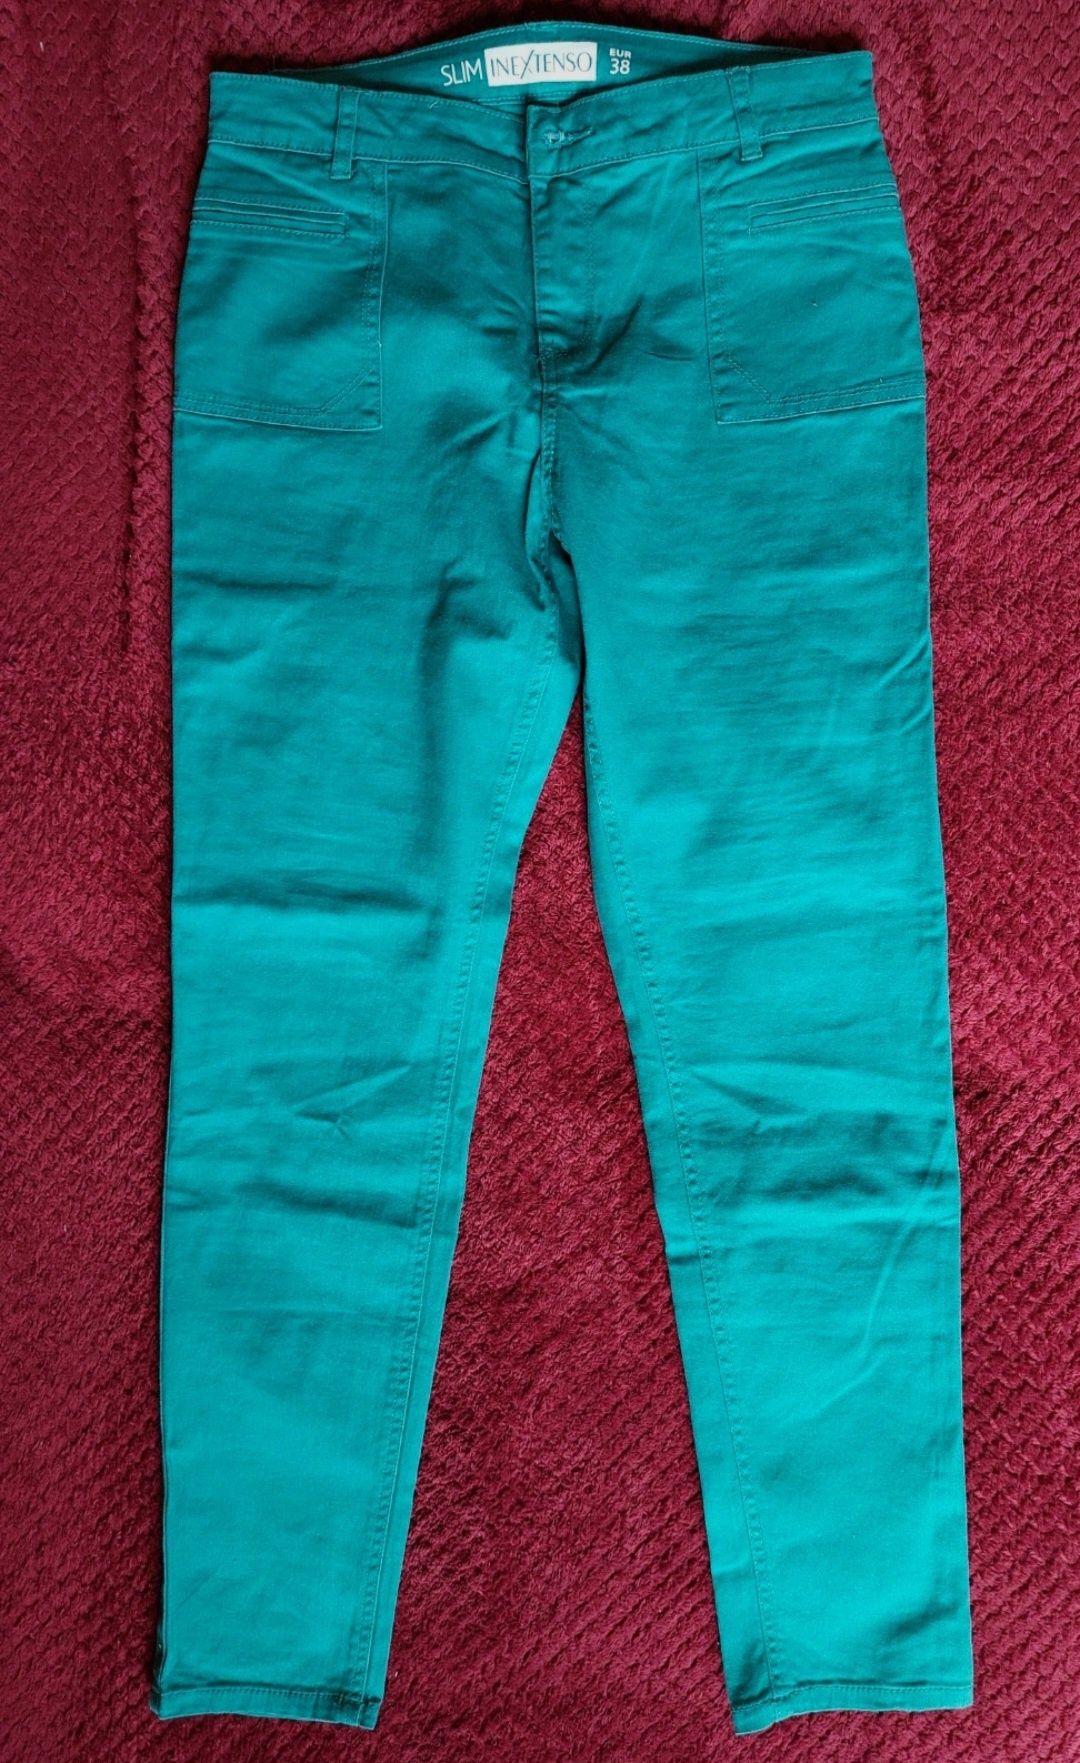 Spodnie rurki S/M - slim - Inextenso 38

Wymiary:
Długość calkowita 95